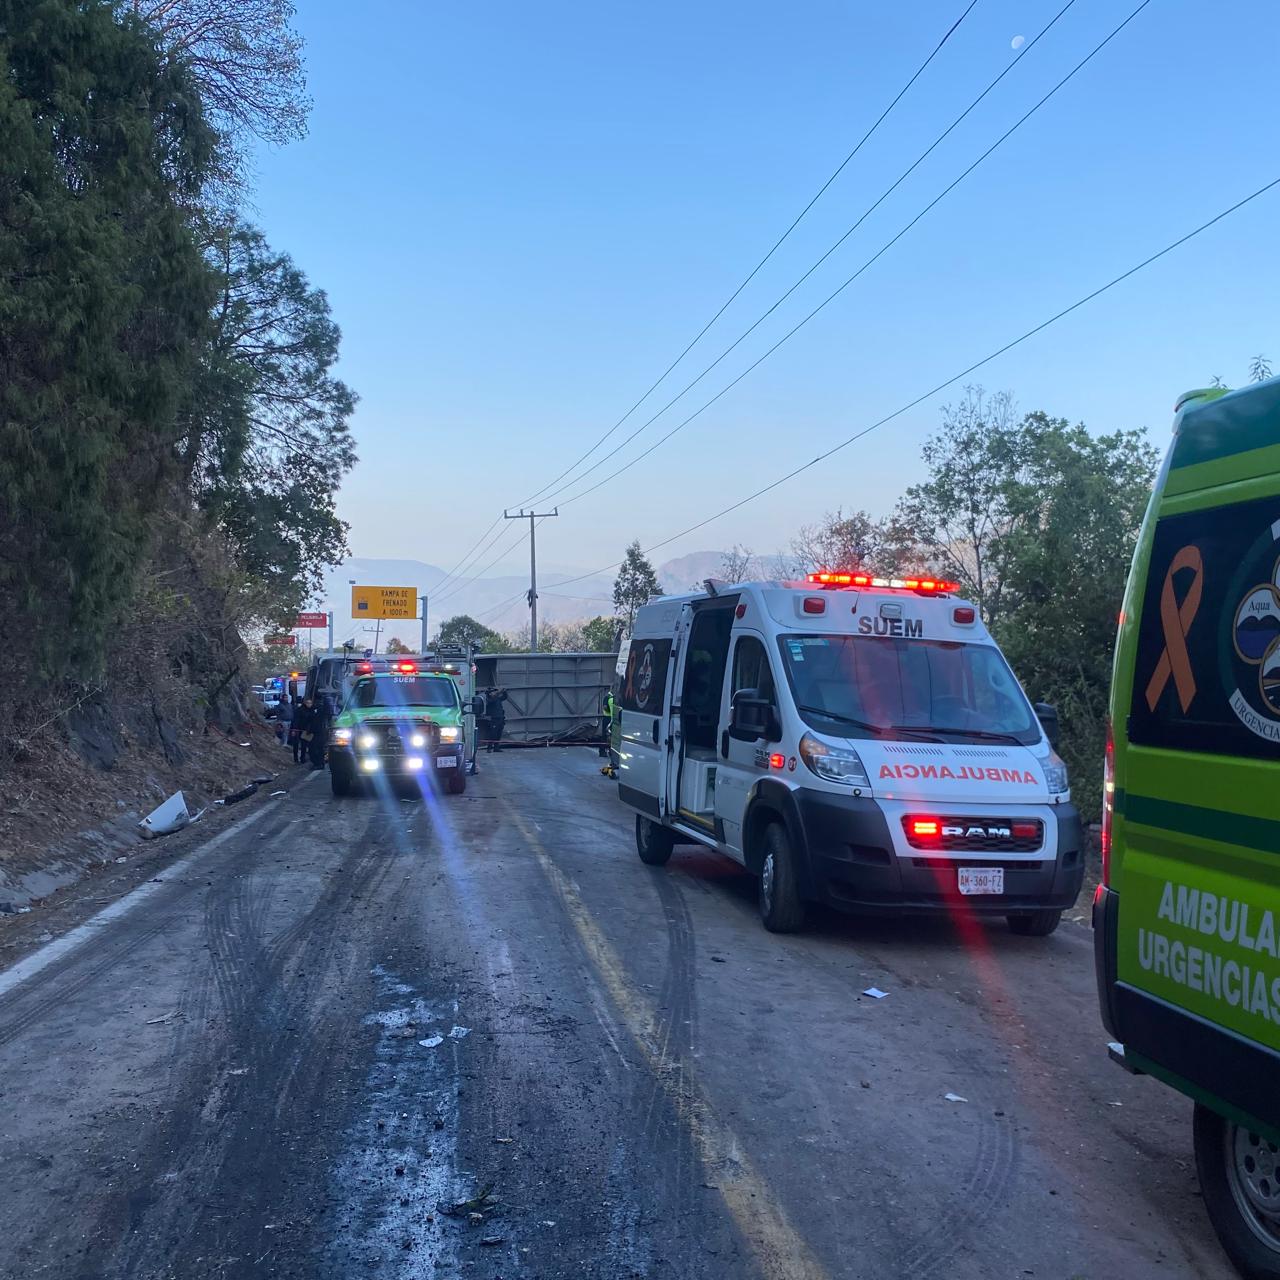 Vuelca autobús en Malinalco, EdoMex; deja al menos 14 muertos y 31 heridos